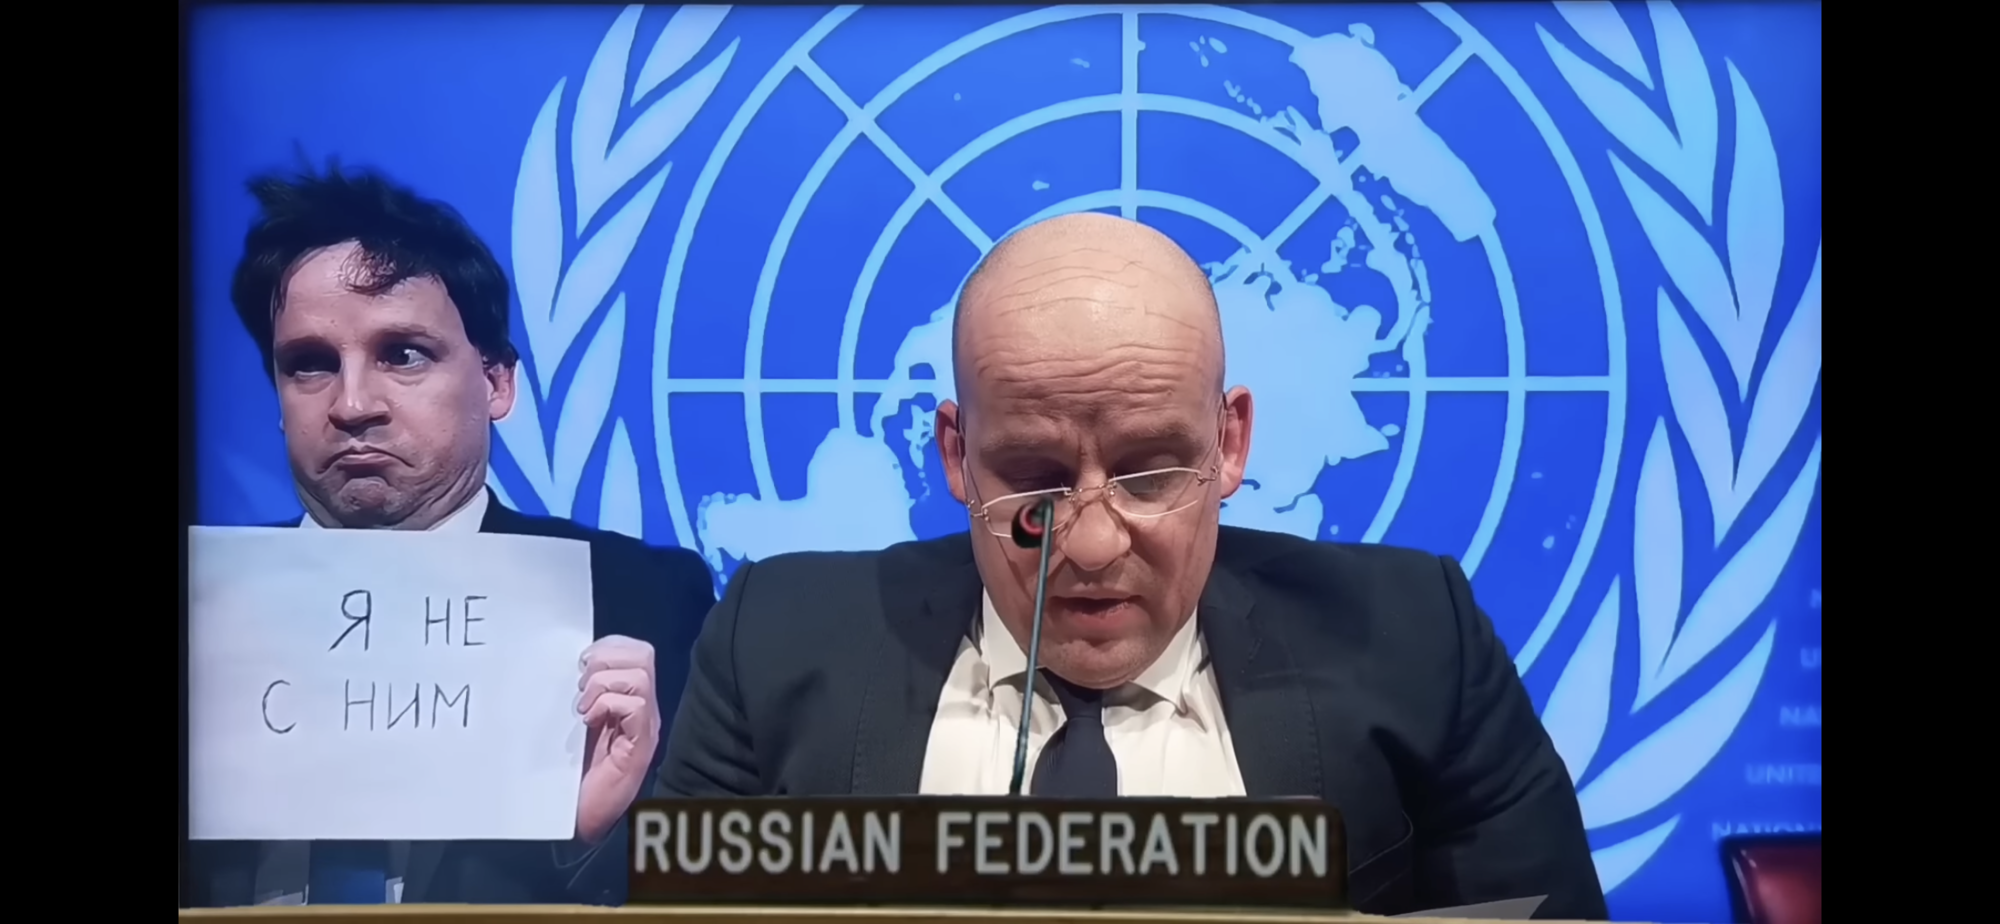 Противопехотные черви и пчелы-камикадзе. Великий в образе представителя РФ в ООН Небензи высмеял пропаганду Кремля